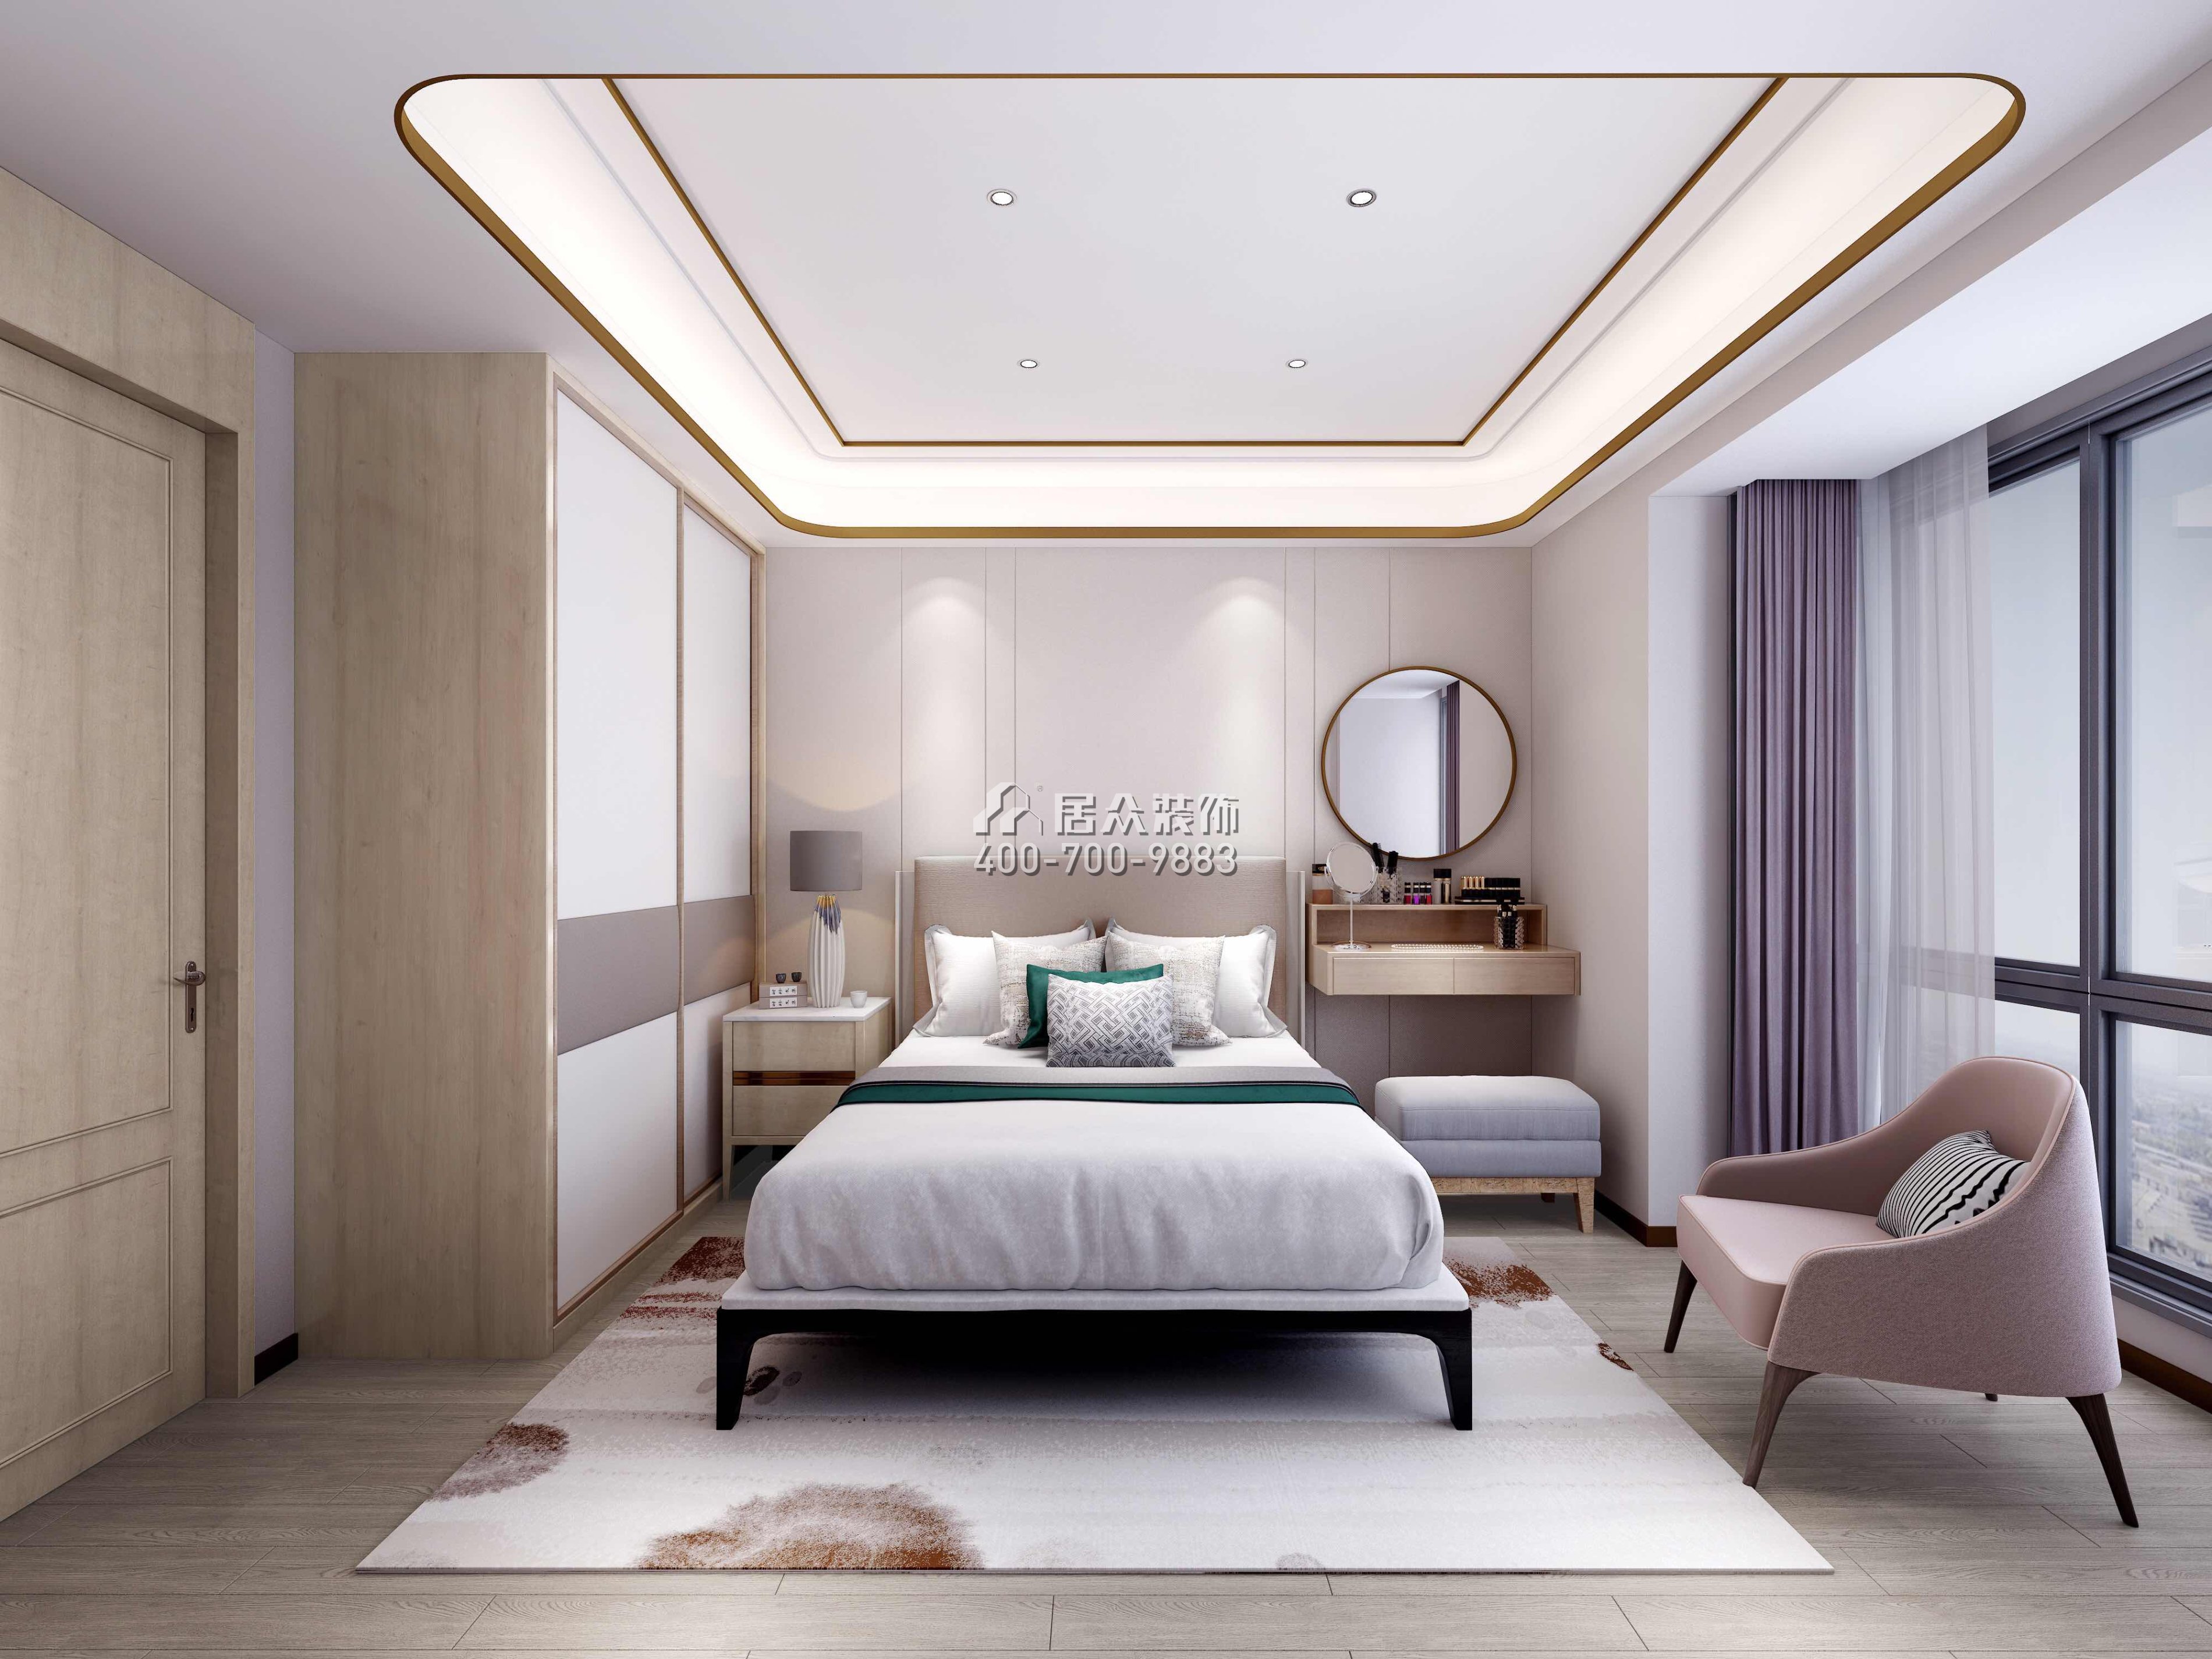 前海东岸126平方米中式风格平层户型卧室装修效果图